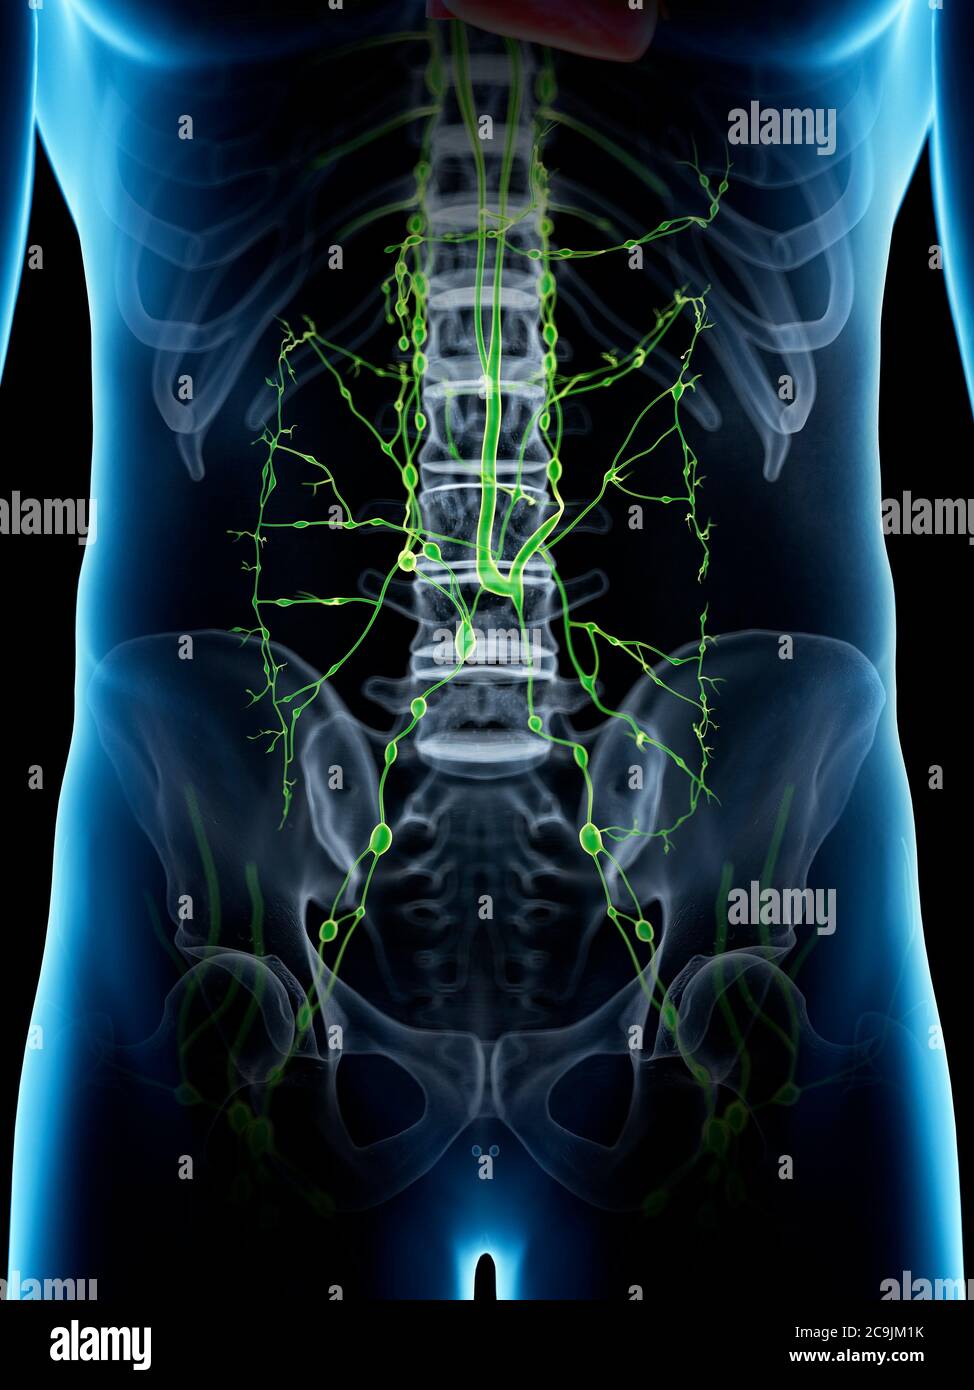 Abdominales lymphatisches System, Computerdarstellung. Stockfoto